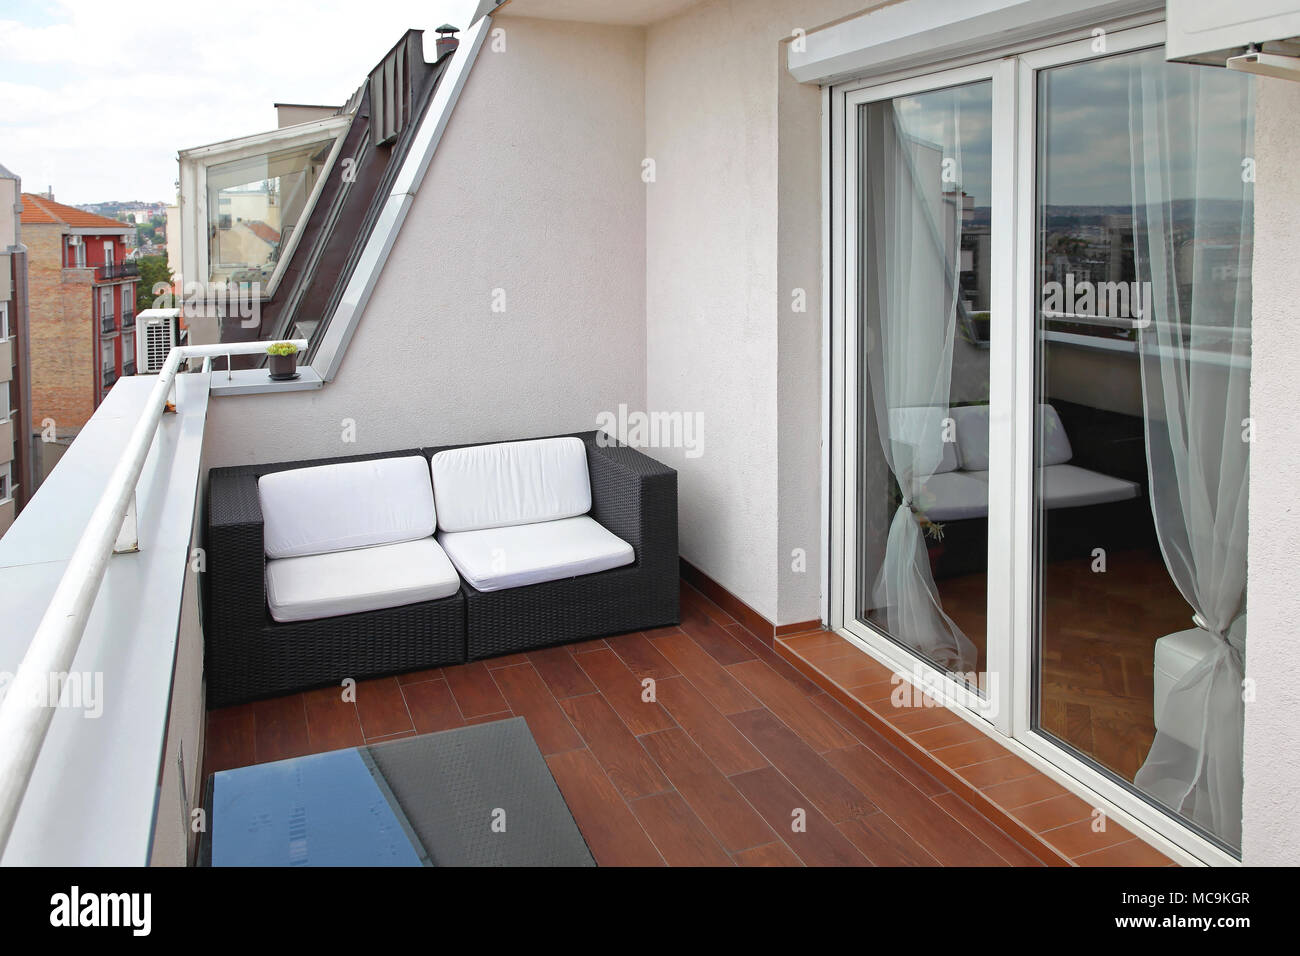 Kleine Terrasse Balkon mit Rattan Sofa Stockfotografie - Alamy